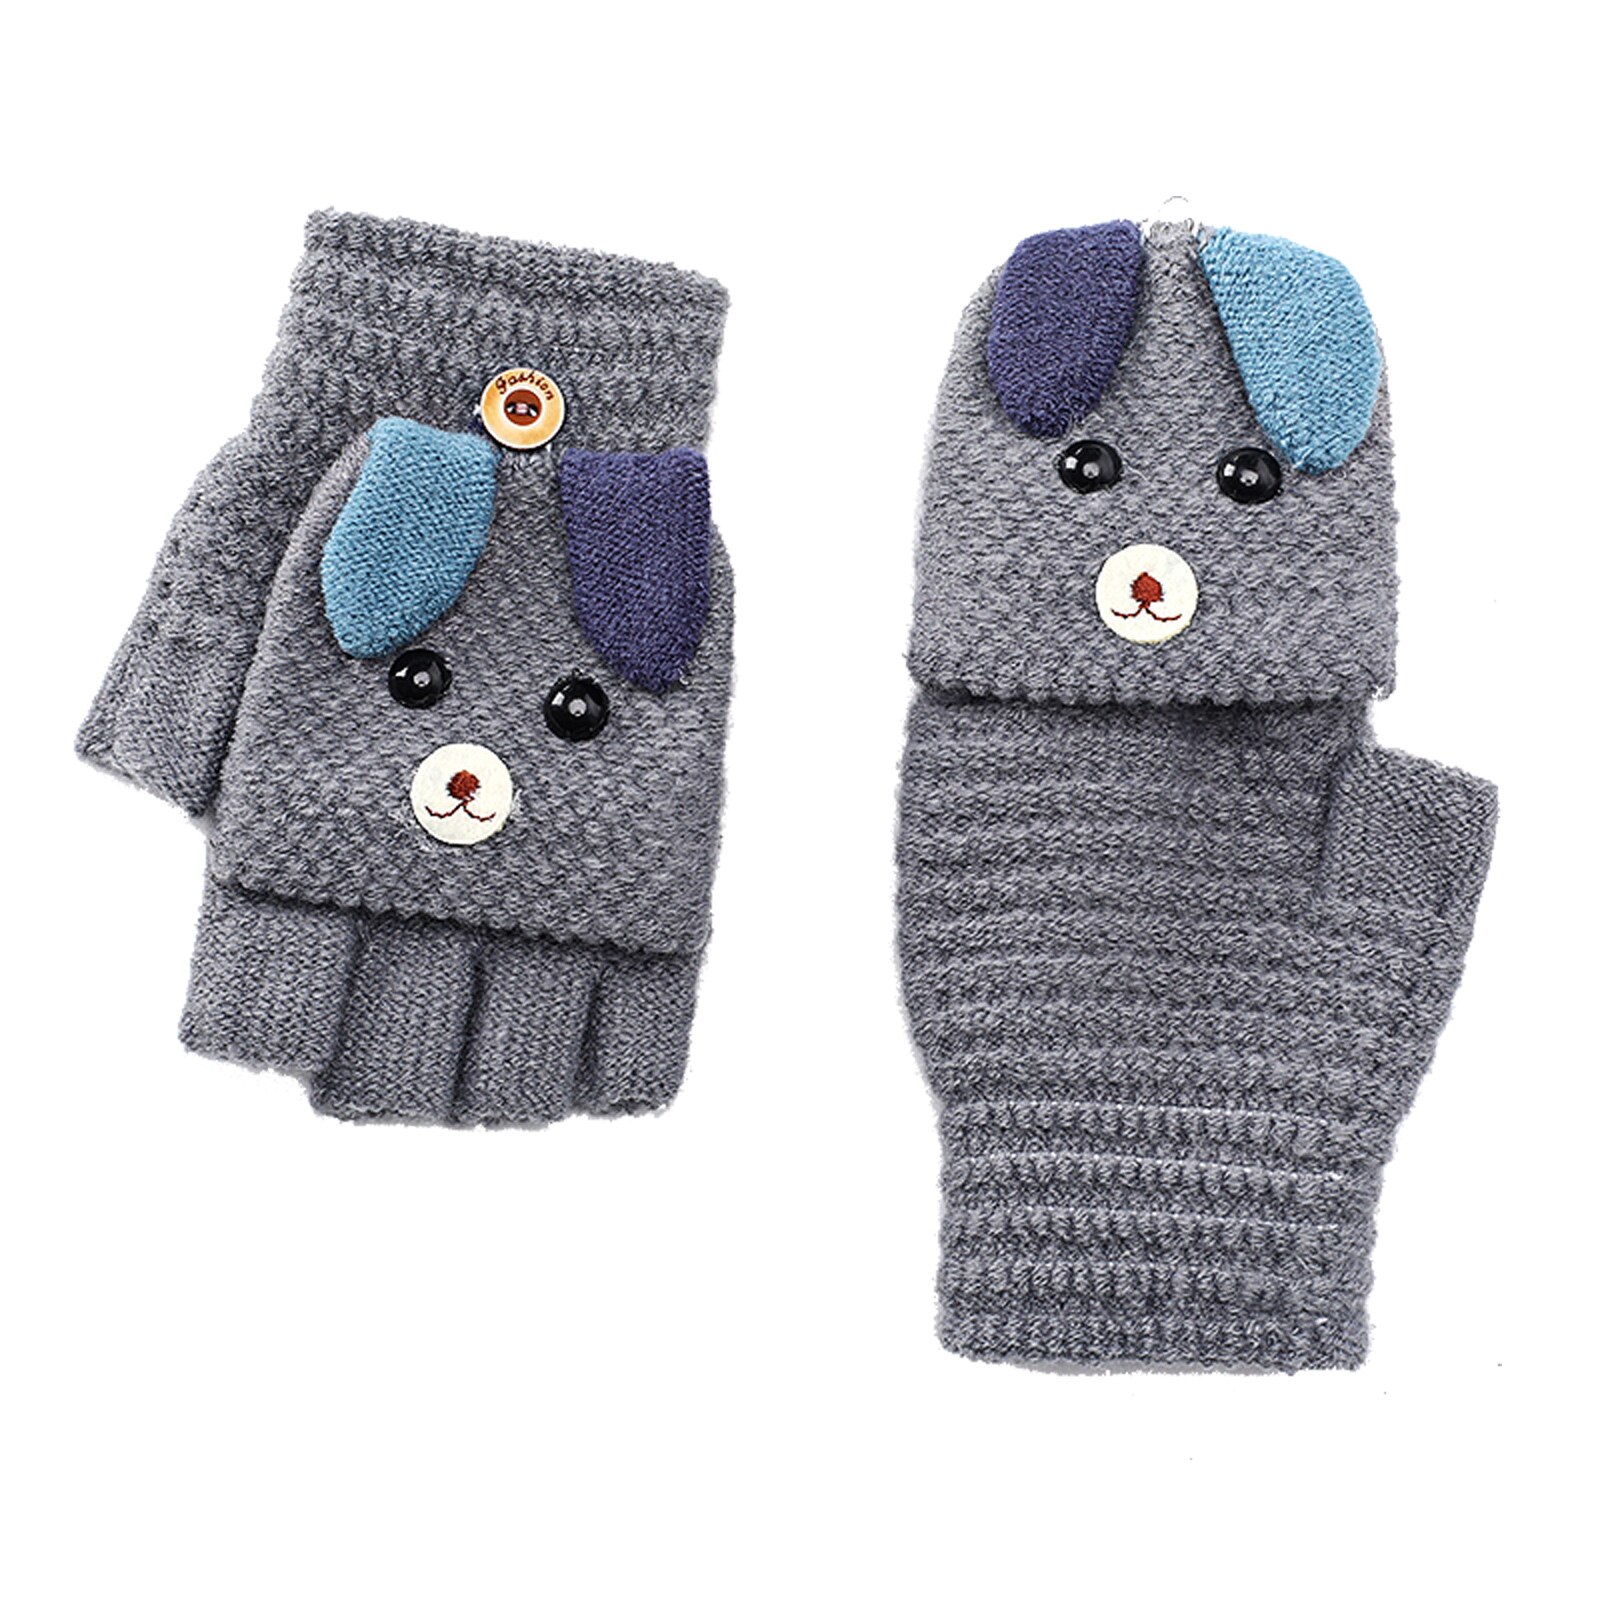 Kids Jongens Meisjes Winter Warm Vingerloze Handschoenen Wanten Leuke Cartoon Handschoenen Met Knop Voor Jongens Meisjes 6-12 Jaar oude